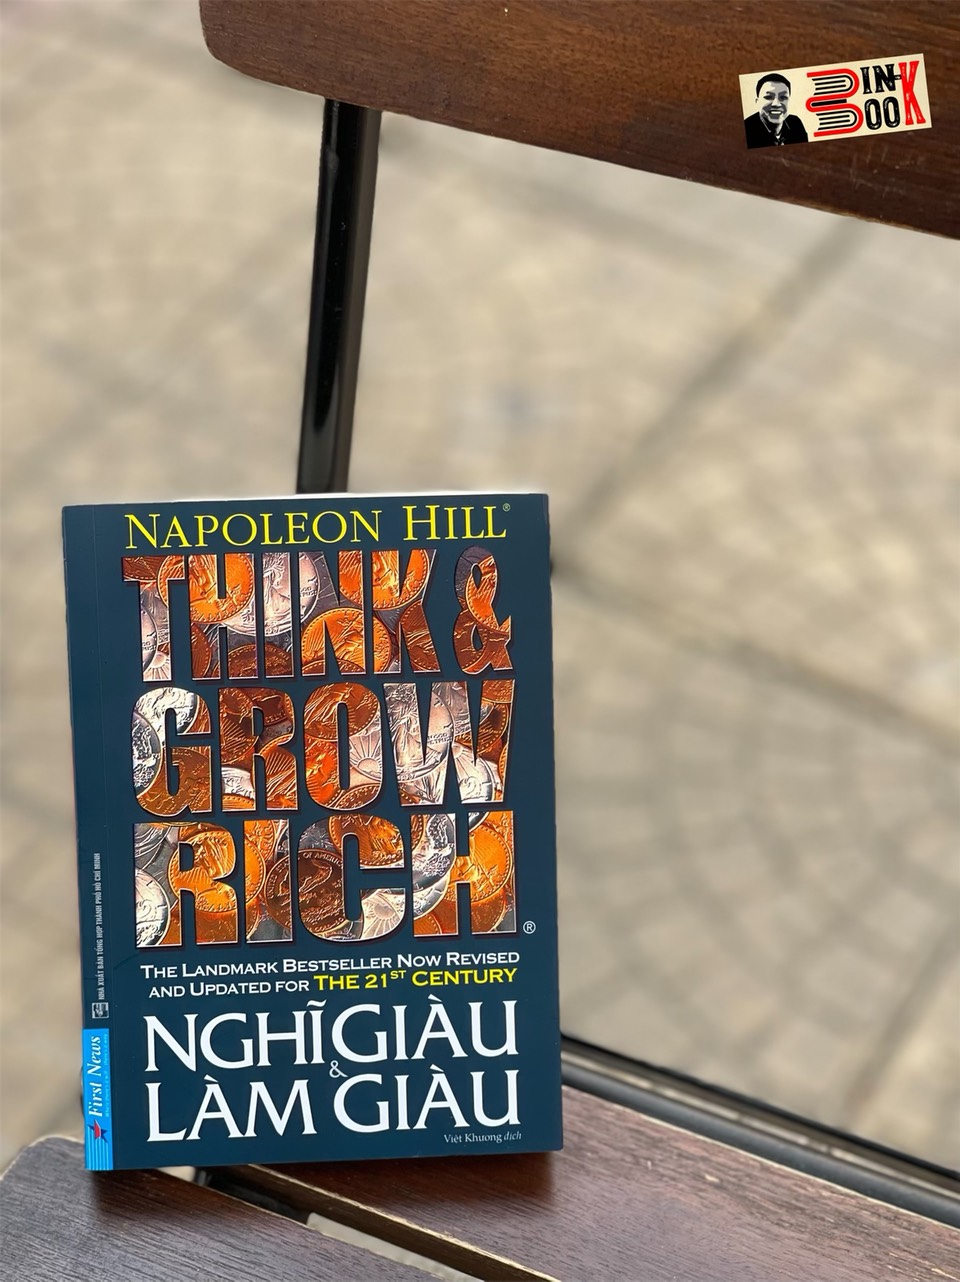 NGHĨ GIÀU VÀ LÀM GIÀU – Napoleon Hill – Việt Khương dịch – First News – NXB Tổng hợp Thành phố Hồ Chí Minh (khổ nhỏ bỏ túi)